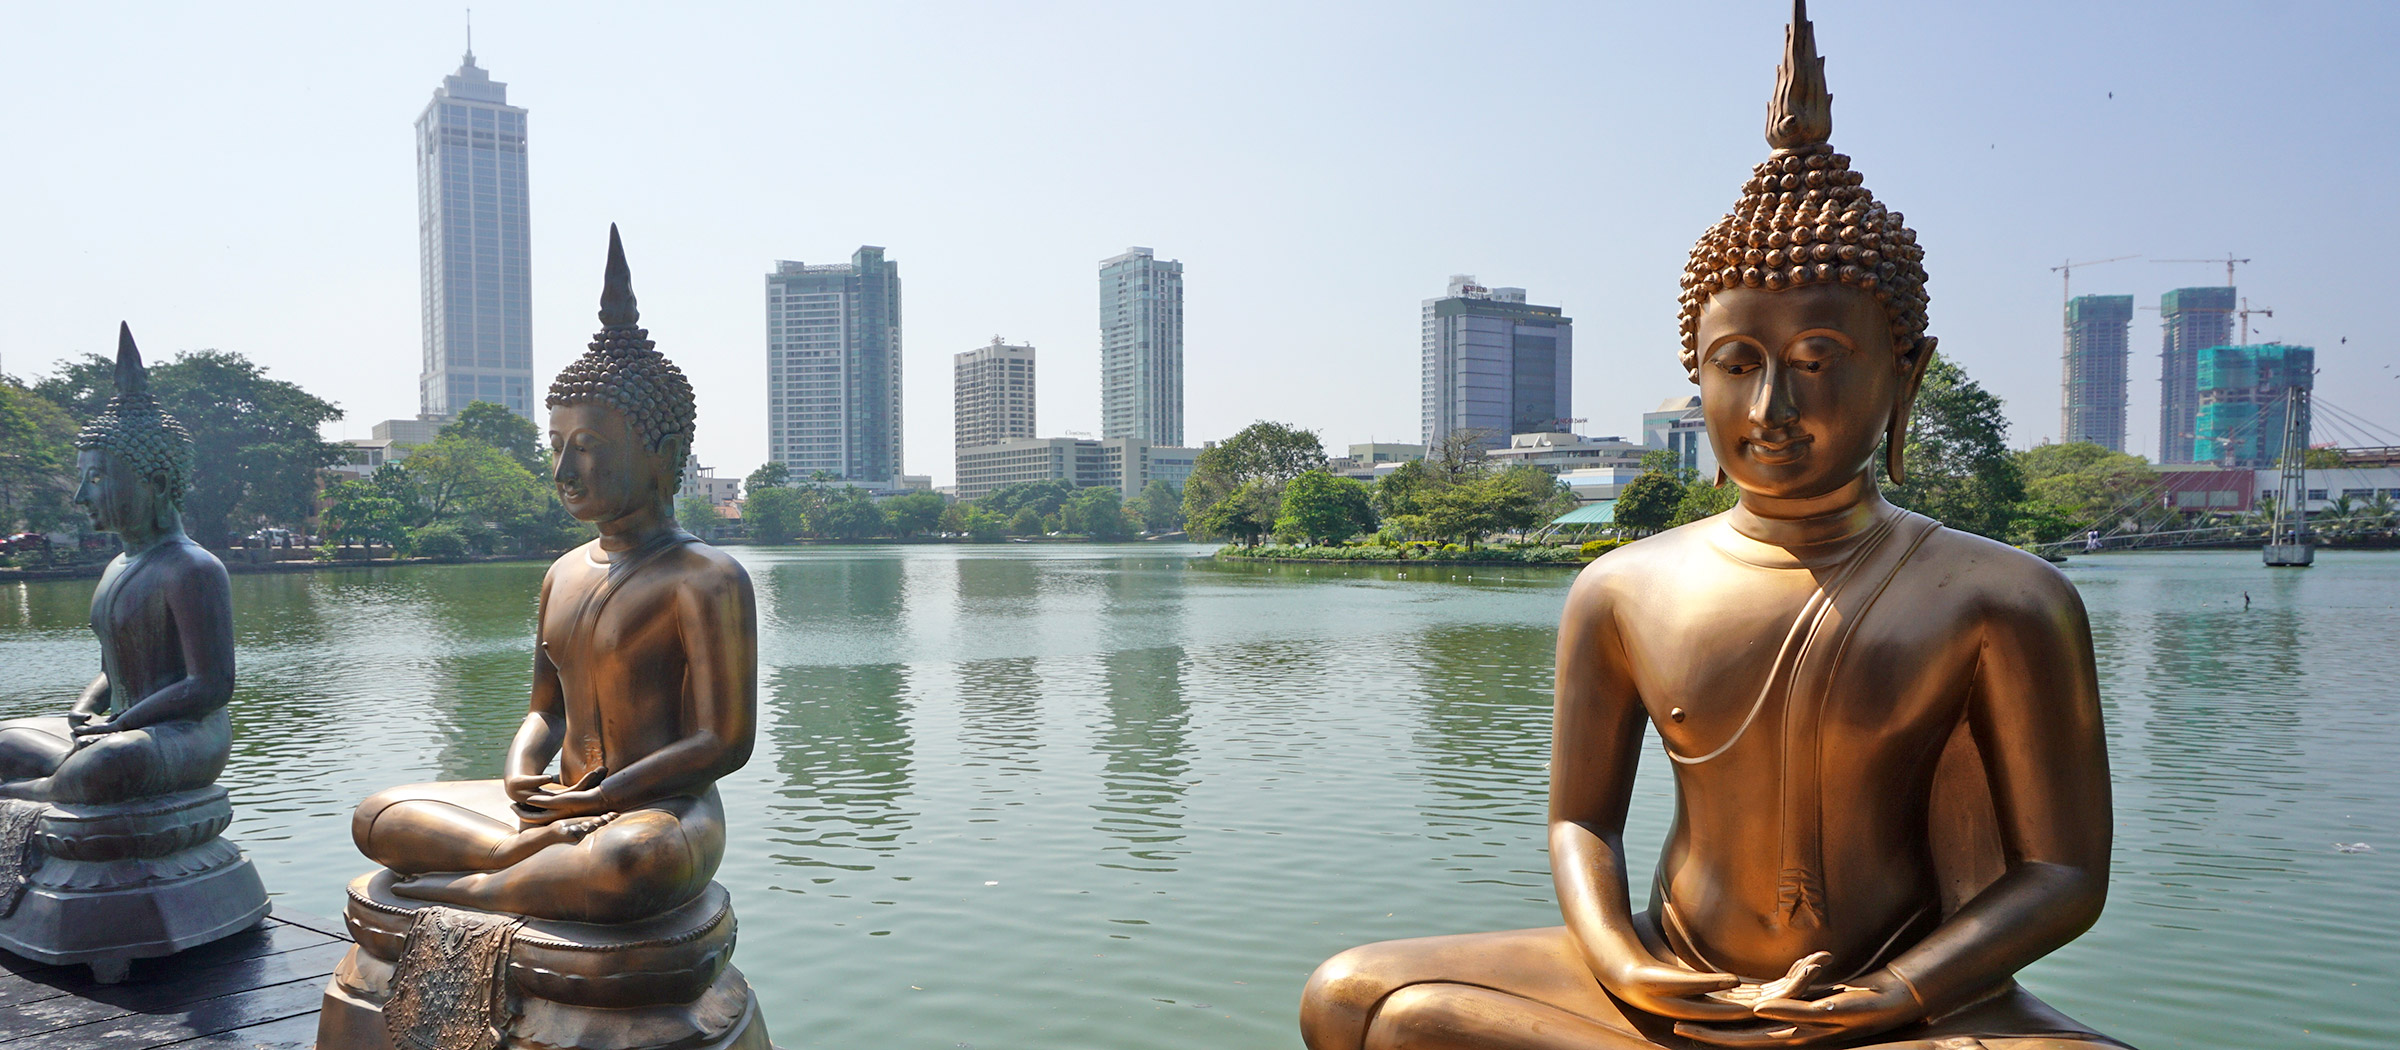 Reise: Sri Lanka | Kultur, Politik, Wirtschaft und Geschichte Sri Lankas